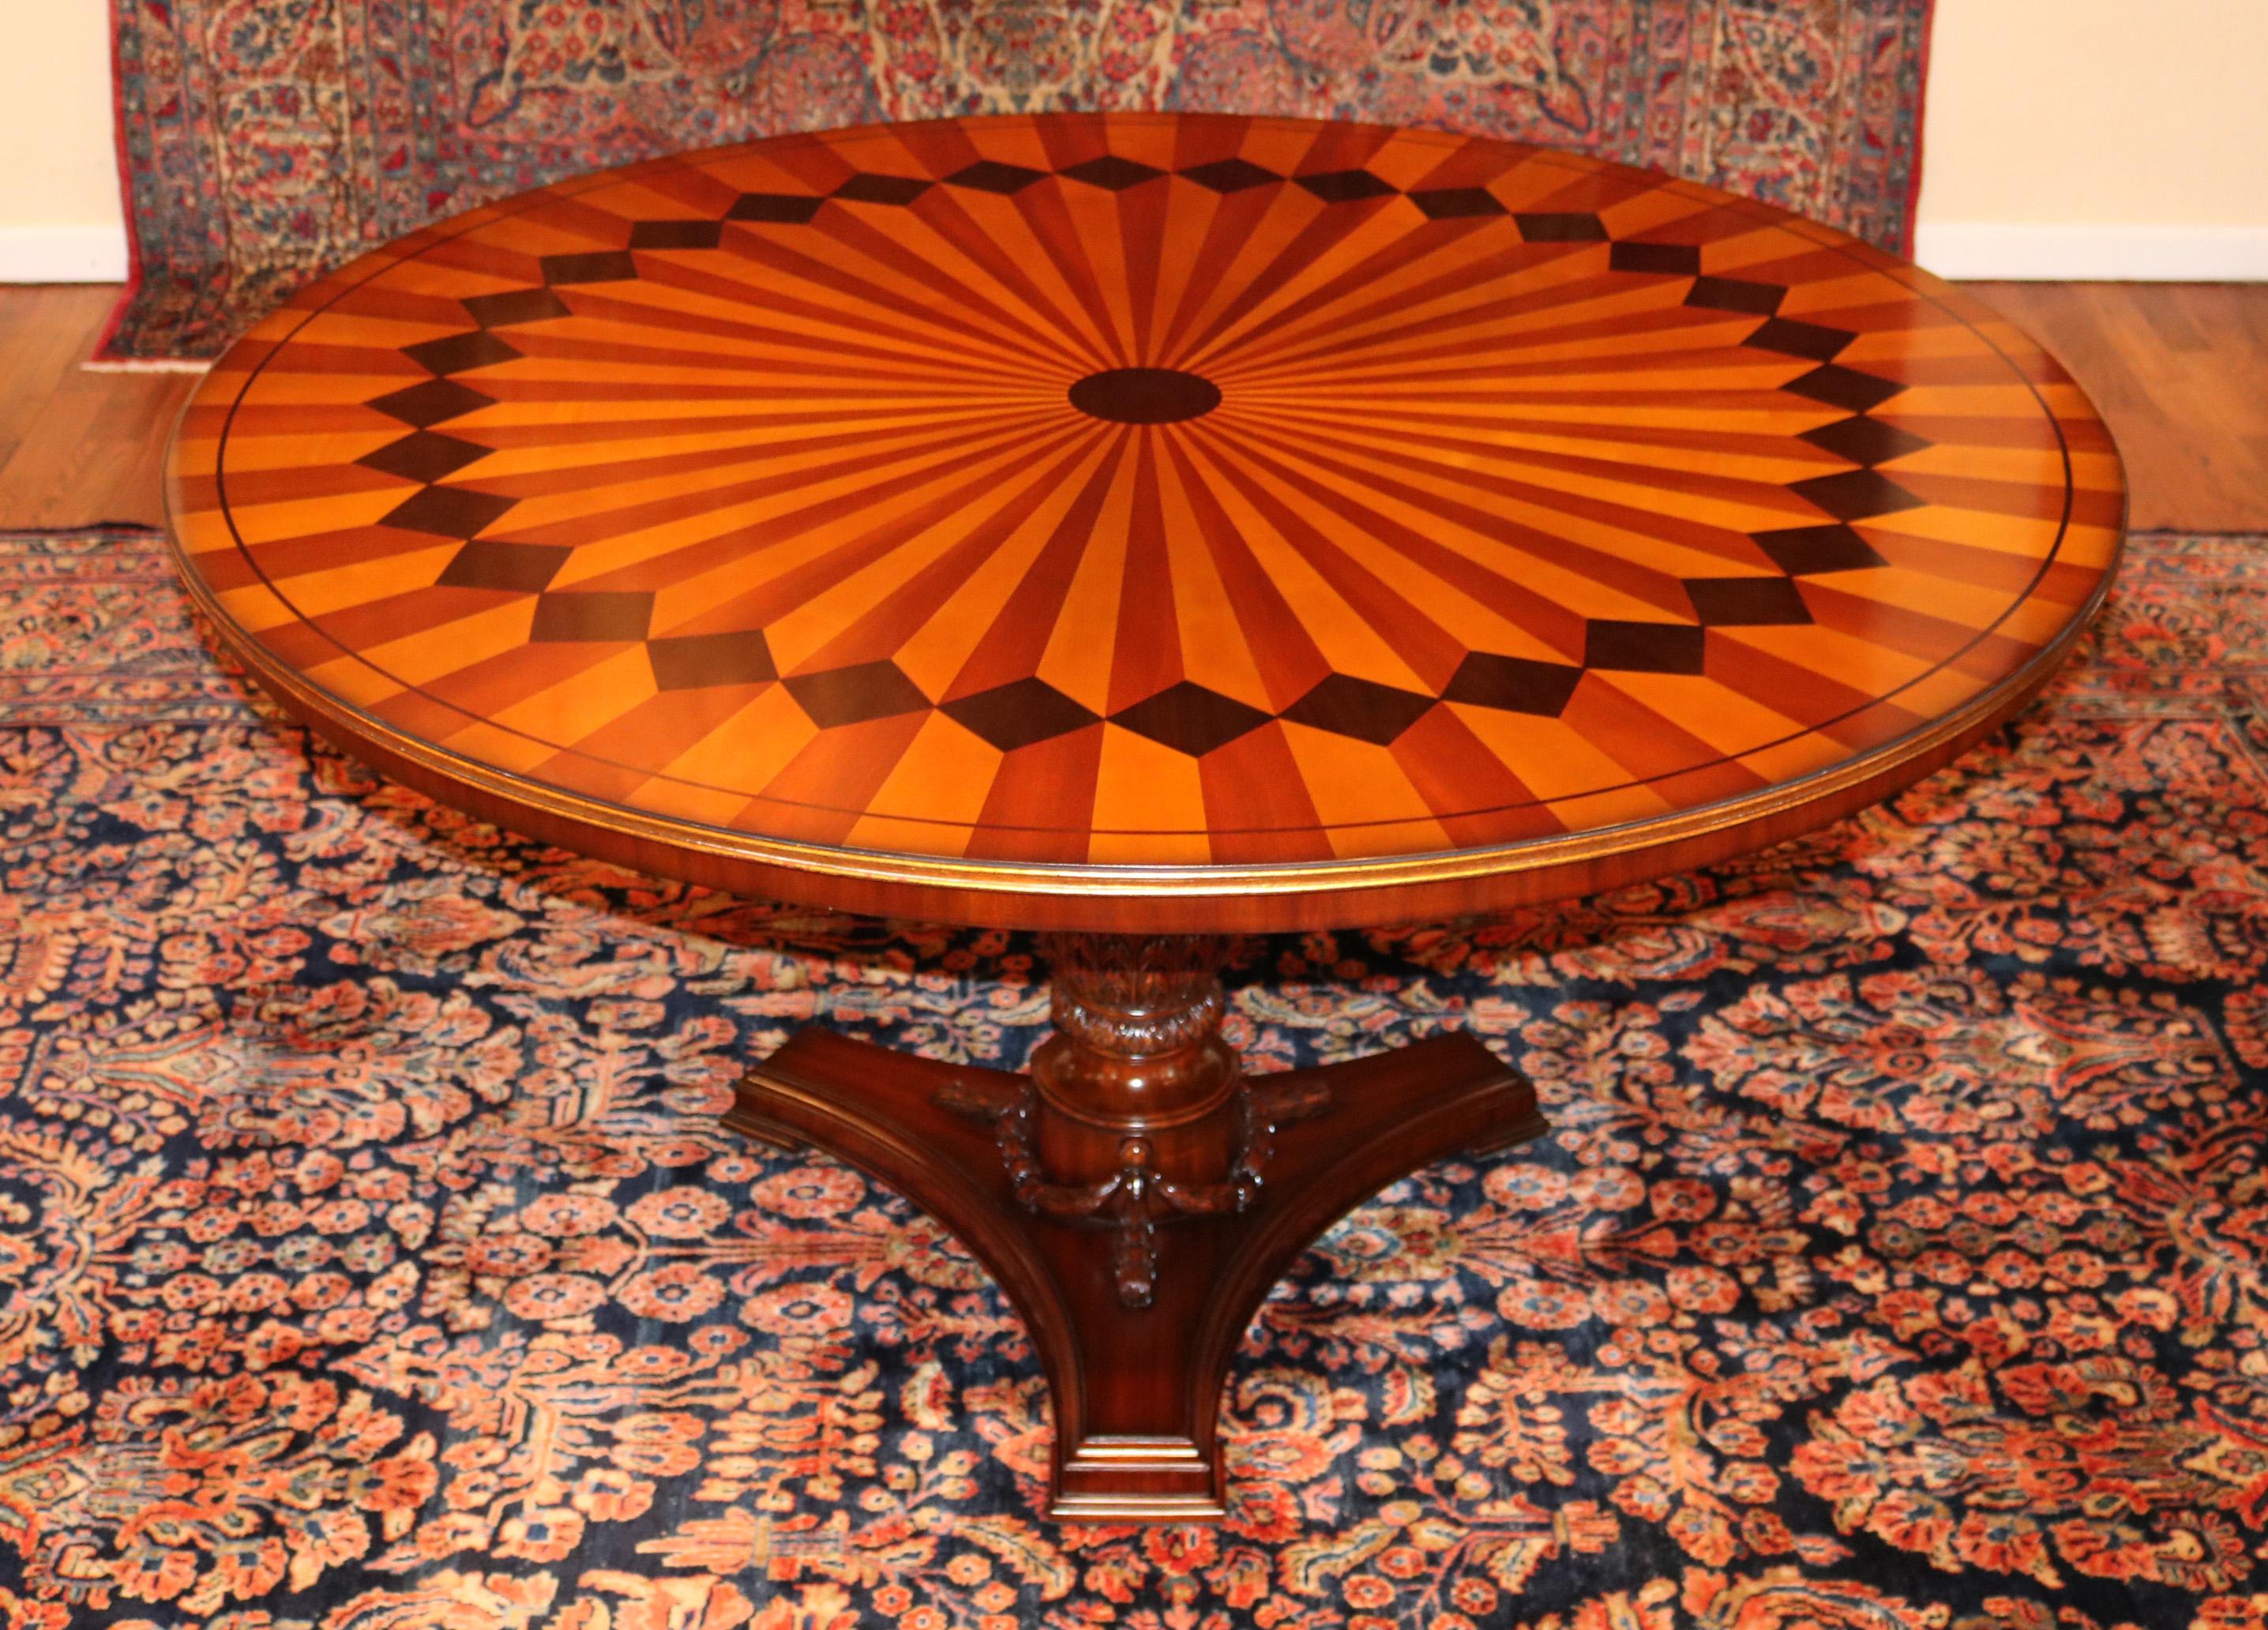 Atemberaubende Intarsien gemischtes Holz & vergoldet italienischen Stil verzierten Zentrum Esstisch

Abmessungen: 59